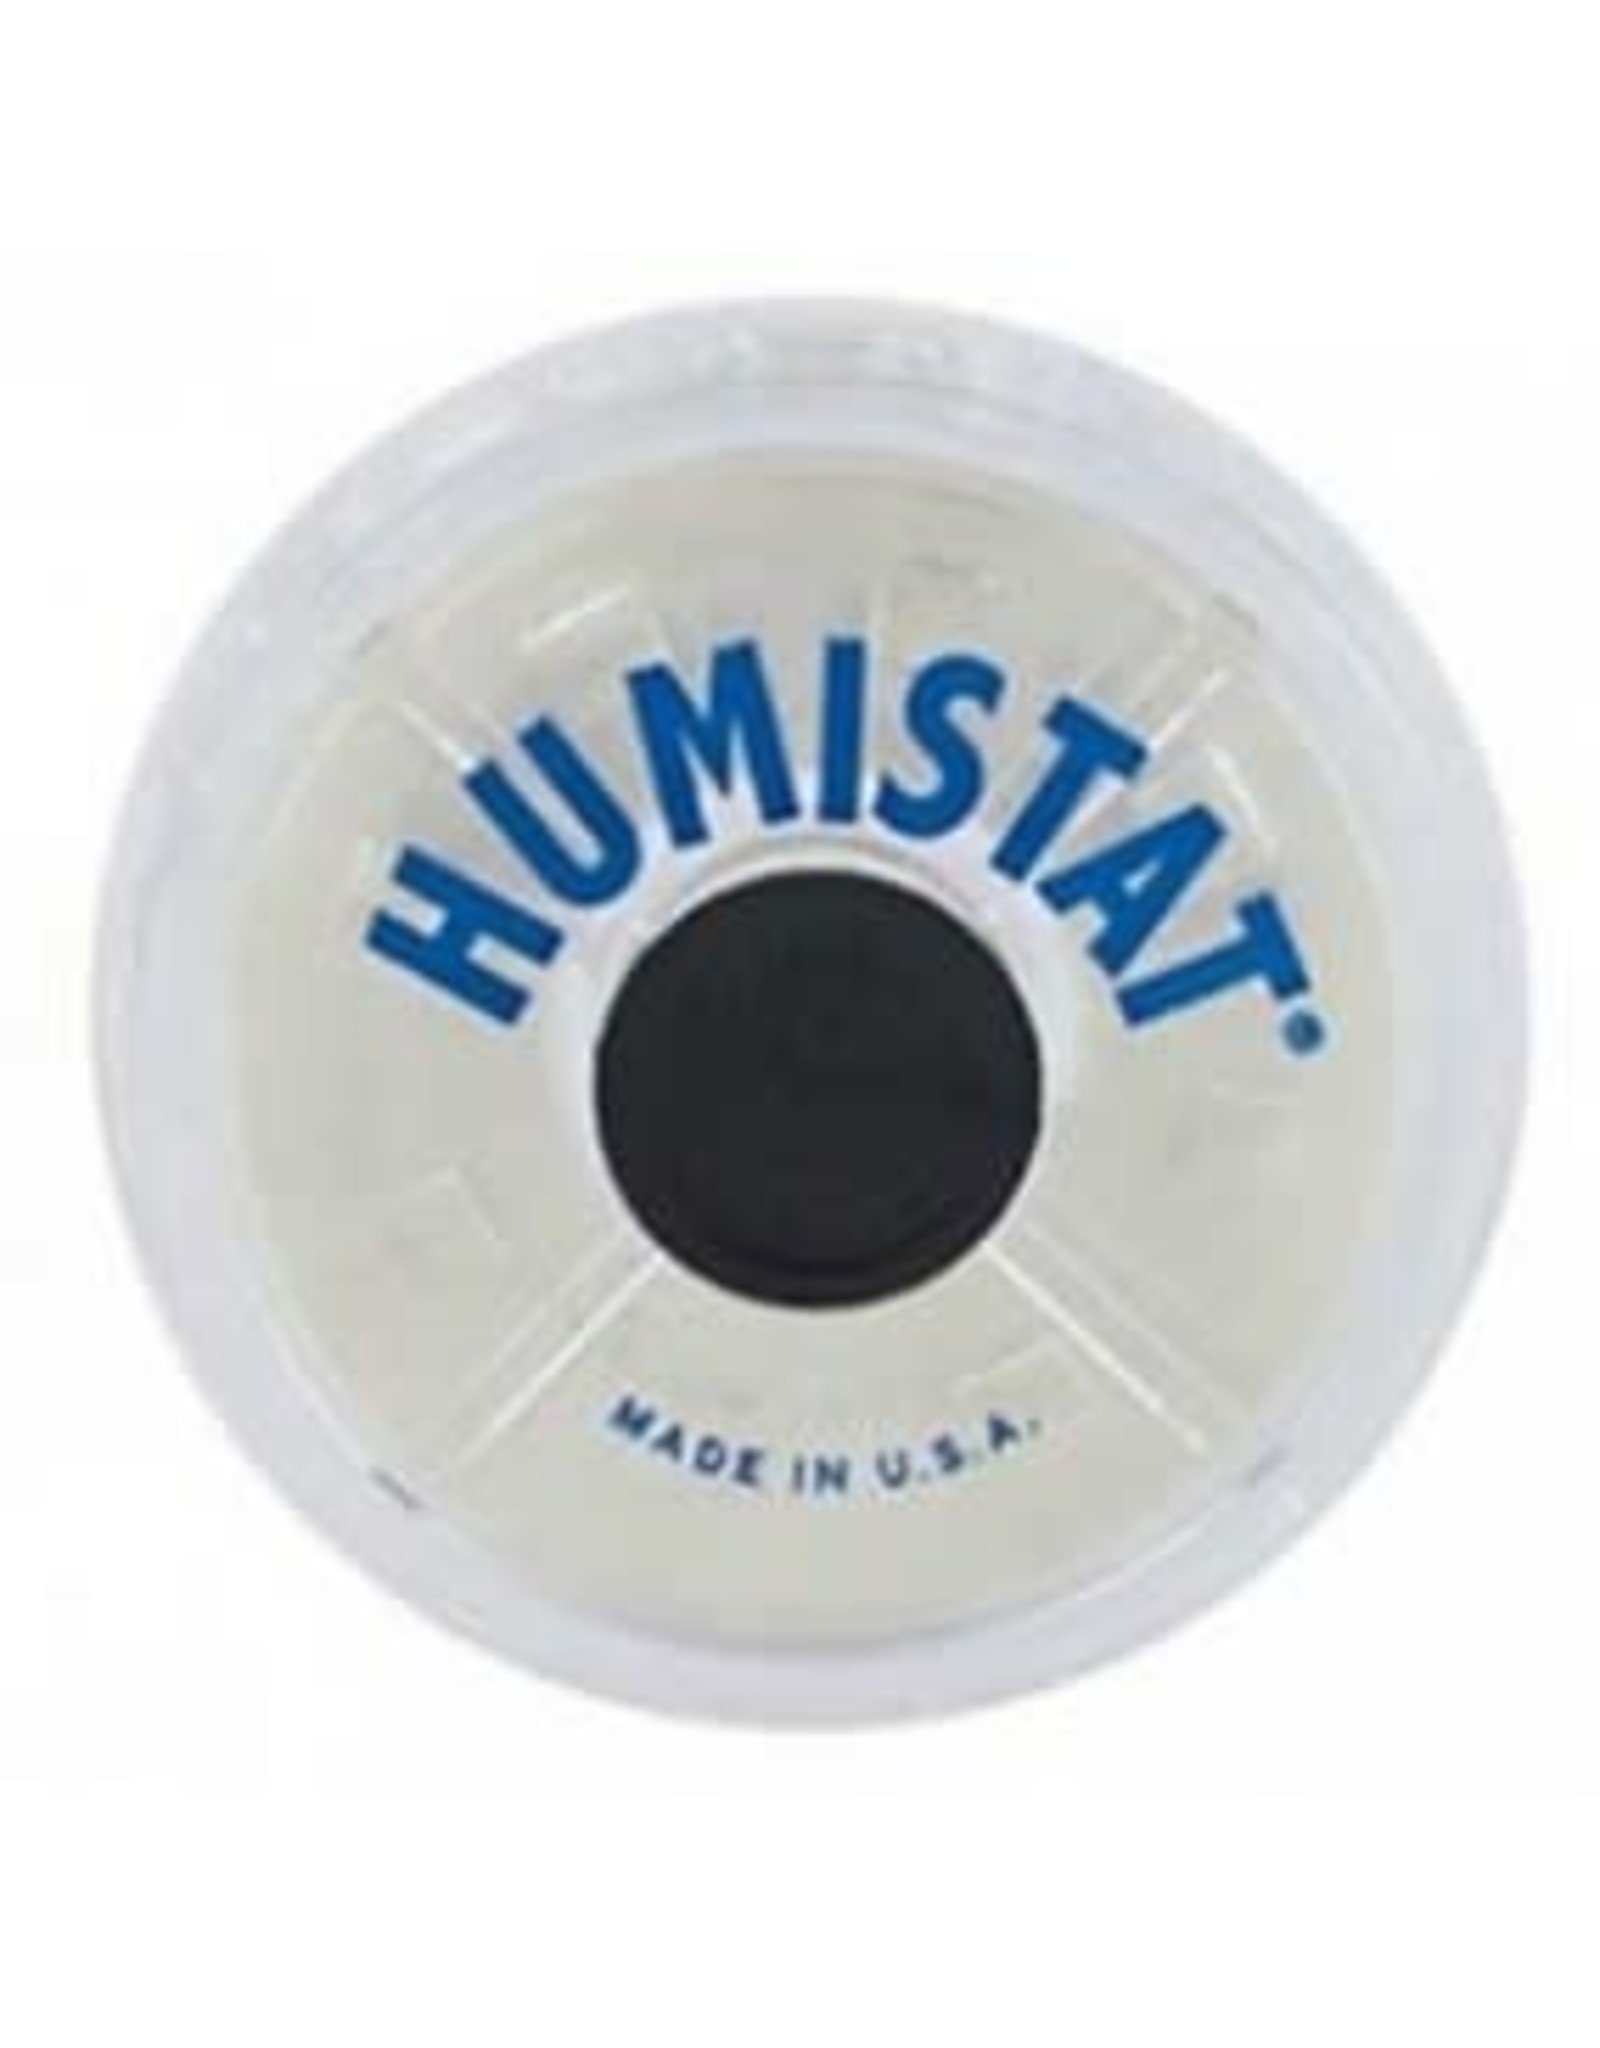 Humistat Humistat Humidifier Model #3